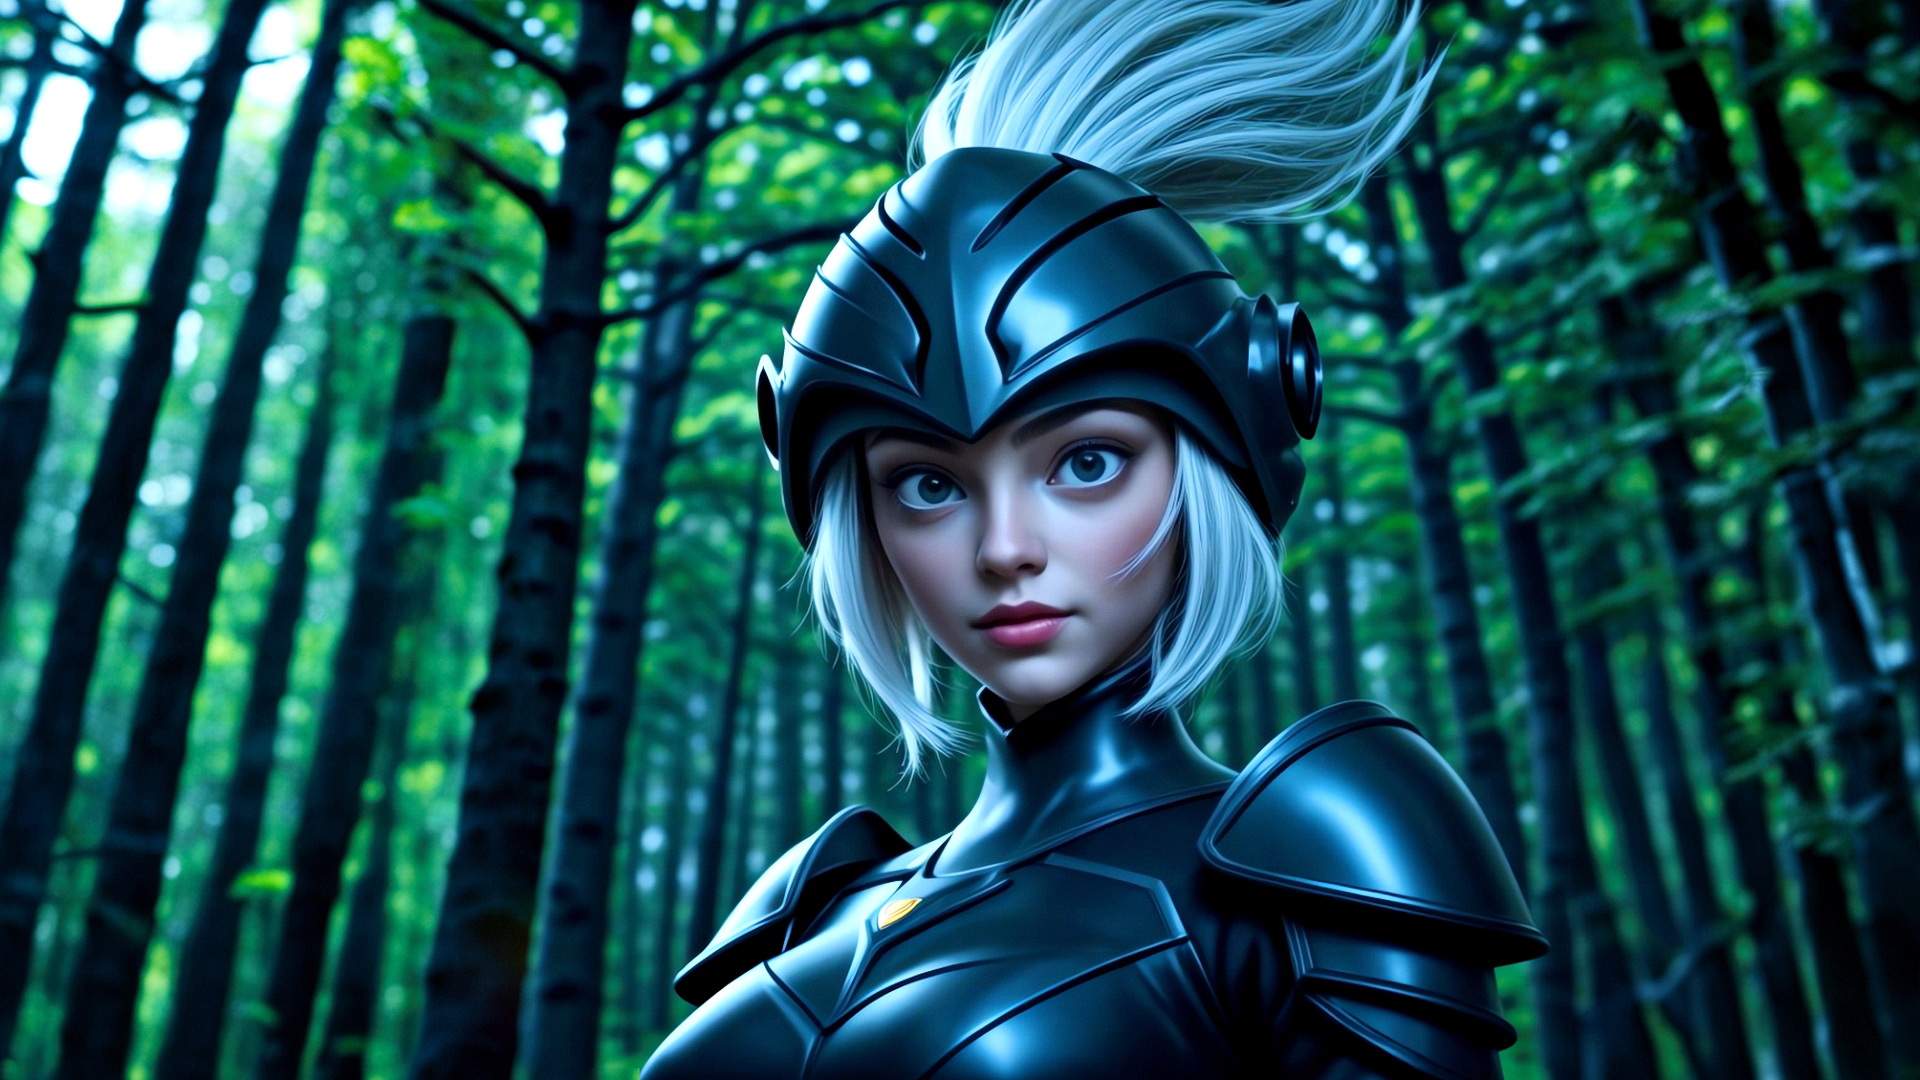 森林背景下身着黑色盔甲、头戴黑色头盔的少女骑士